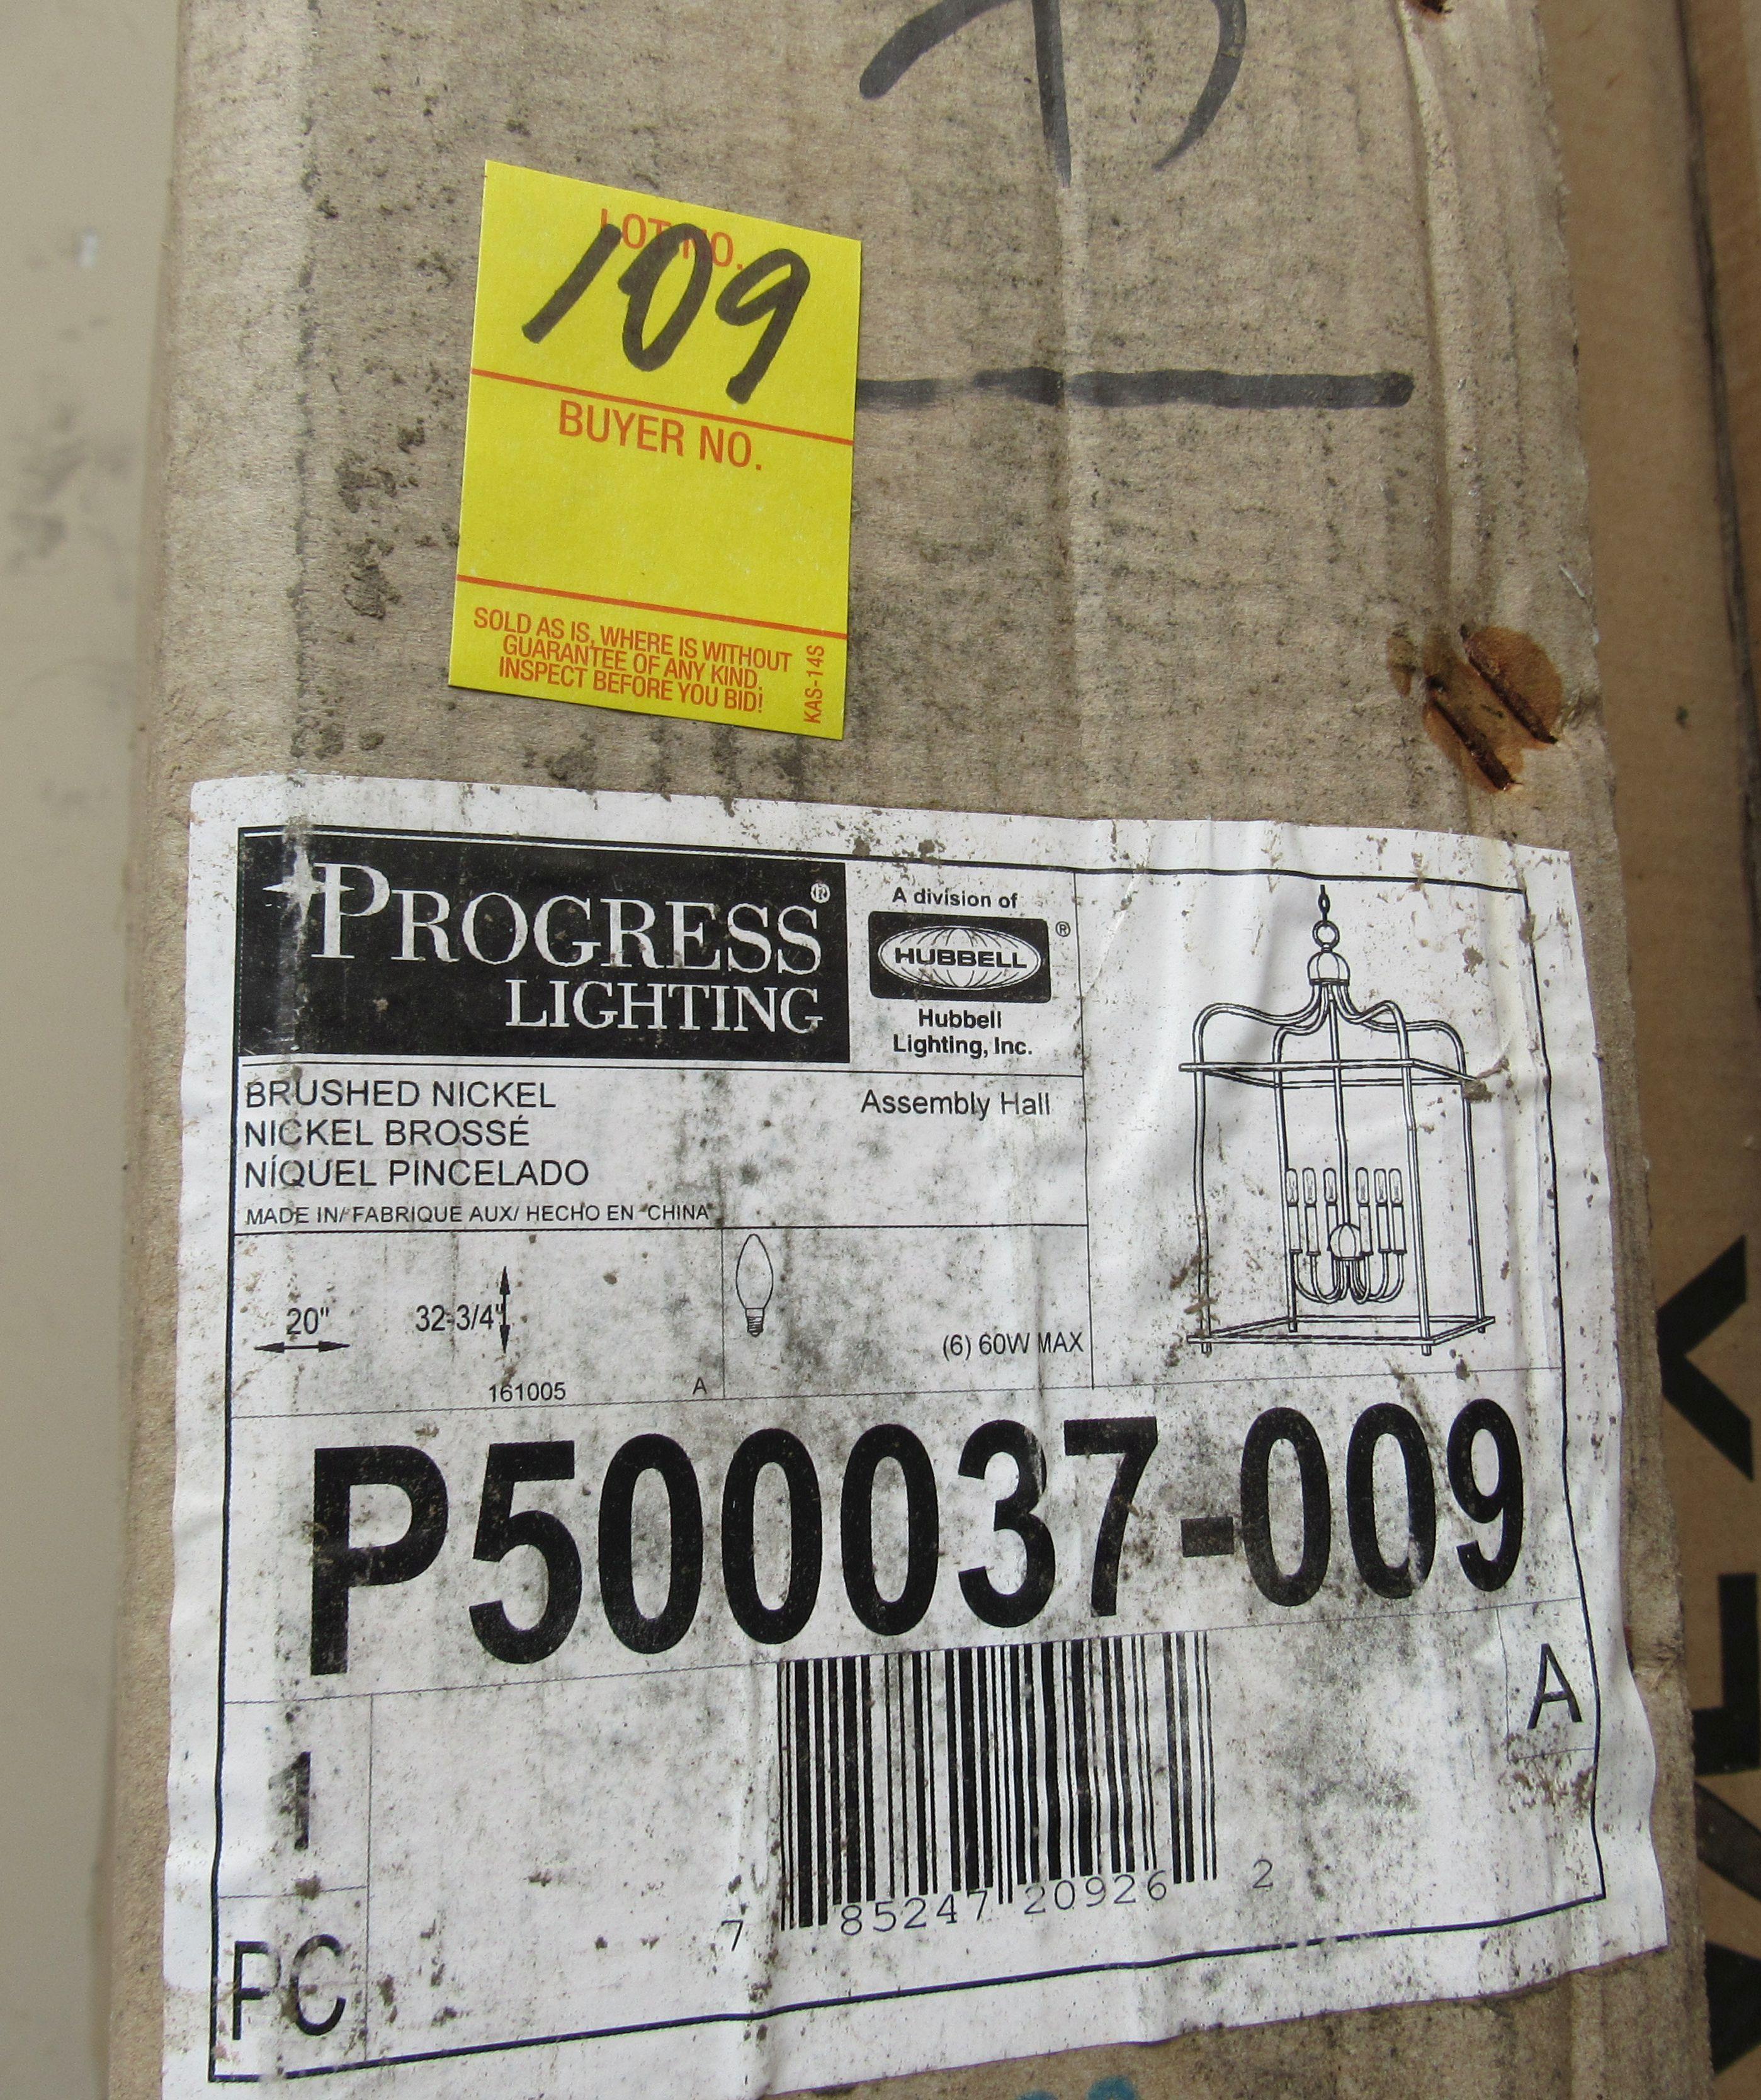 Progress Lighting Chandelier, Brushed Nickel #P500037-009